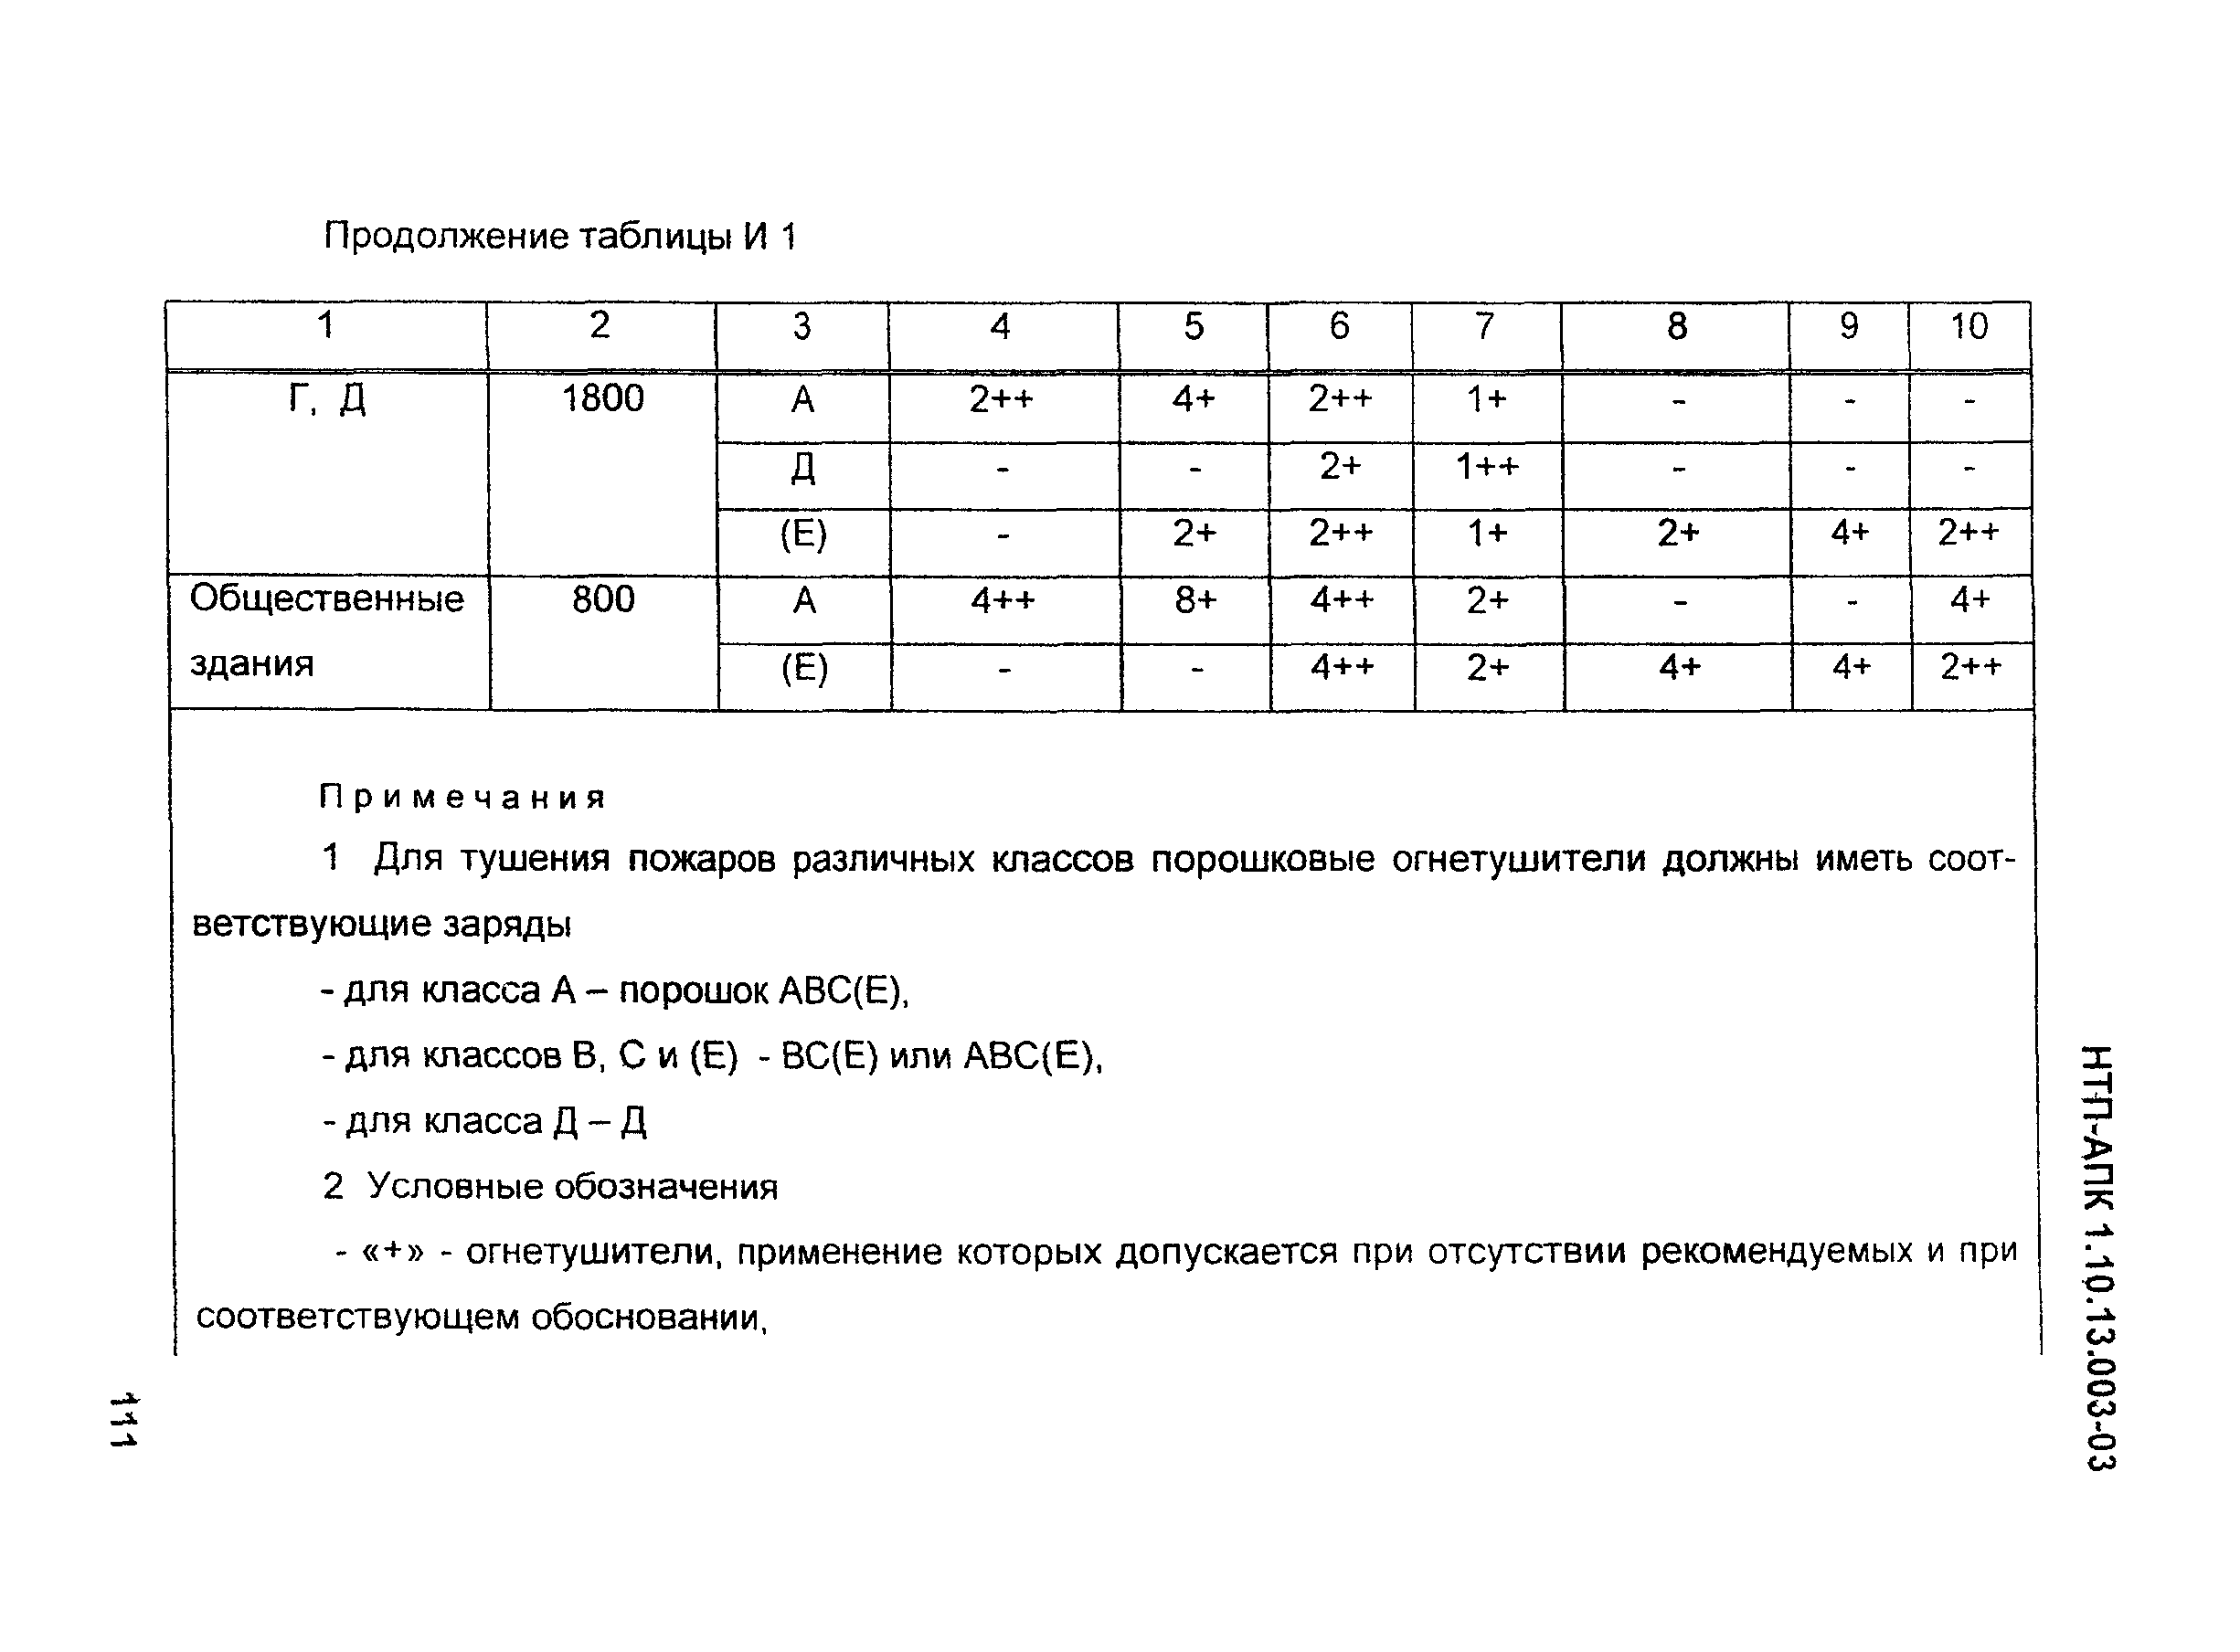 НТП-АПК 1.10.13.003-03